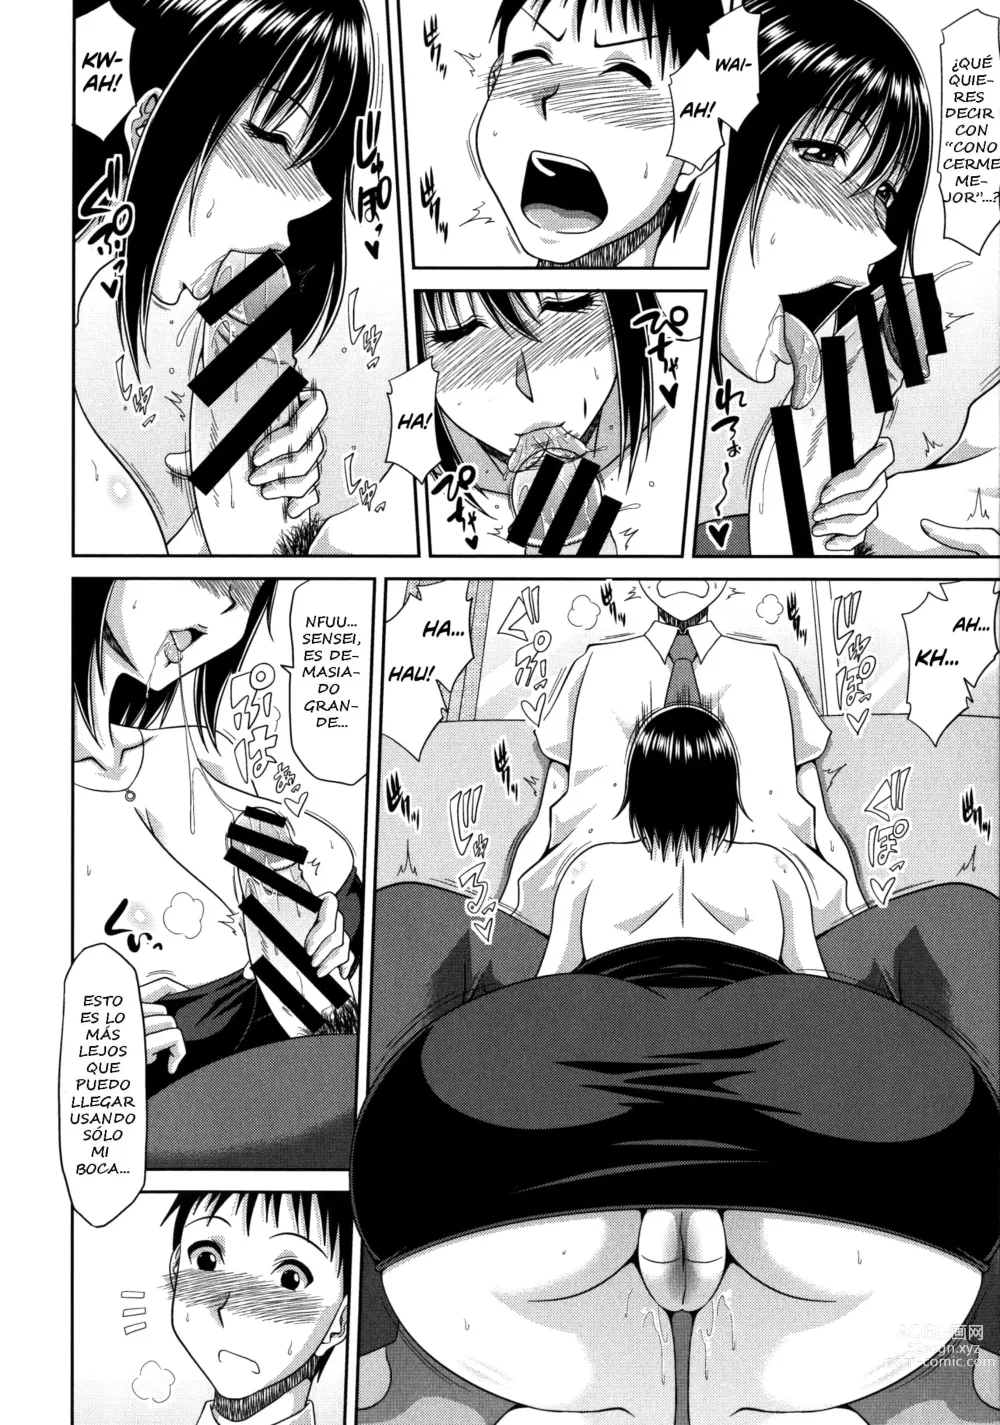 Page 6 of manga Chounyuusai Ch. 5-8, 10